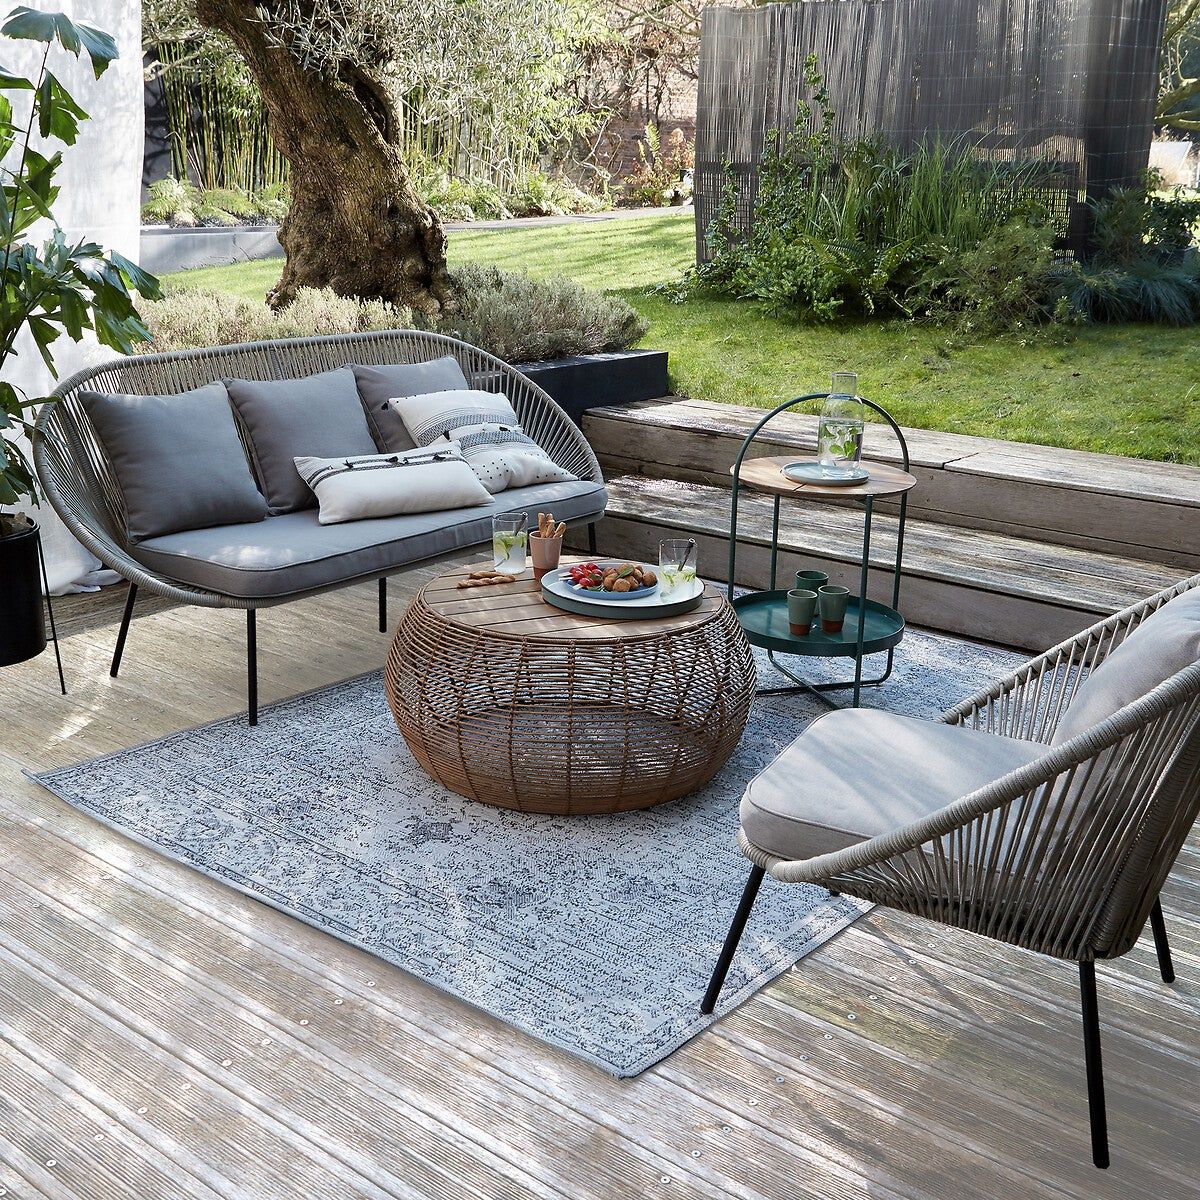 Guau Poner la mesa capacidad 10 mesas de exterior con mucho estilo para decorar tu jardín